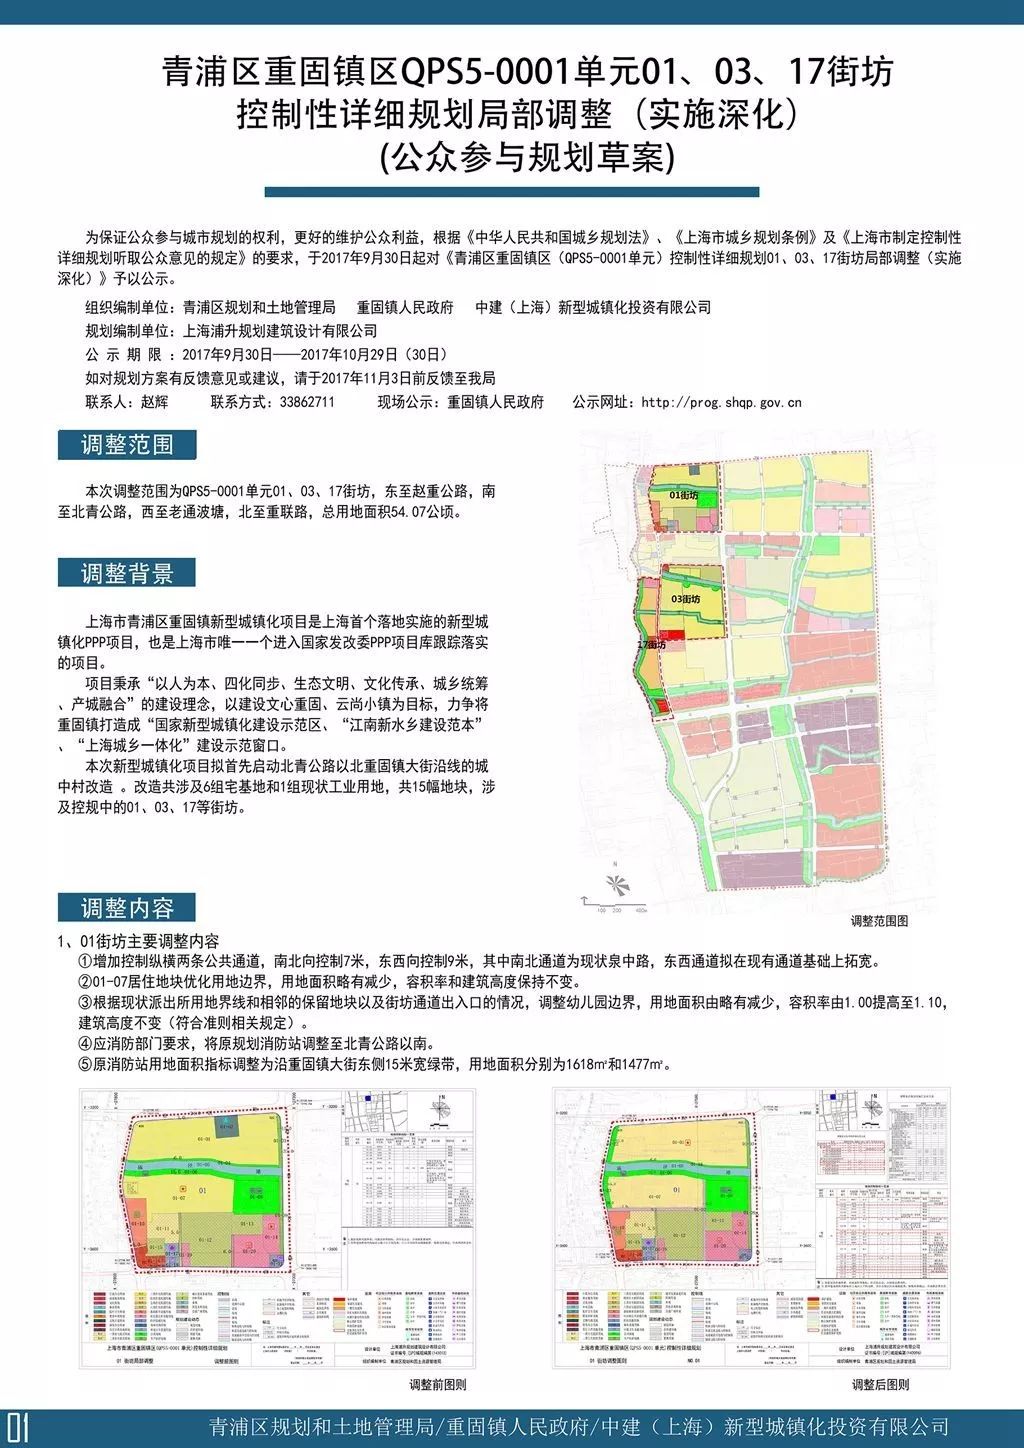 道路新建工程 建设单位:上海市青浦练塘镇 工程名称:规划三路